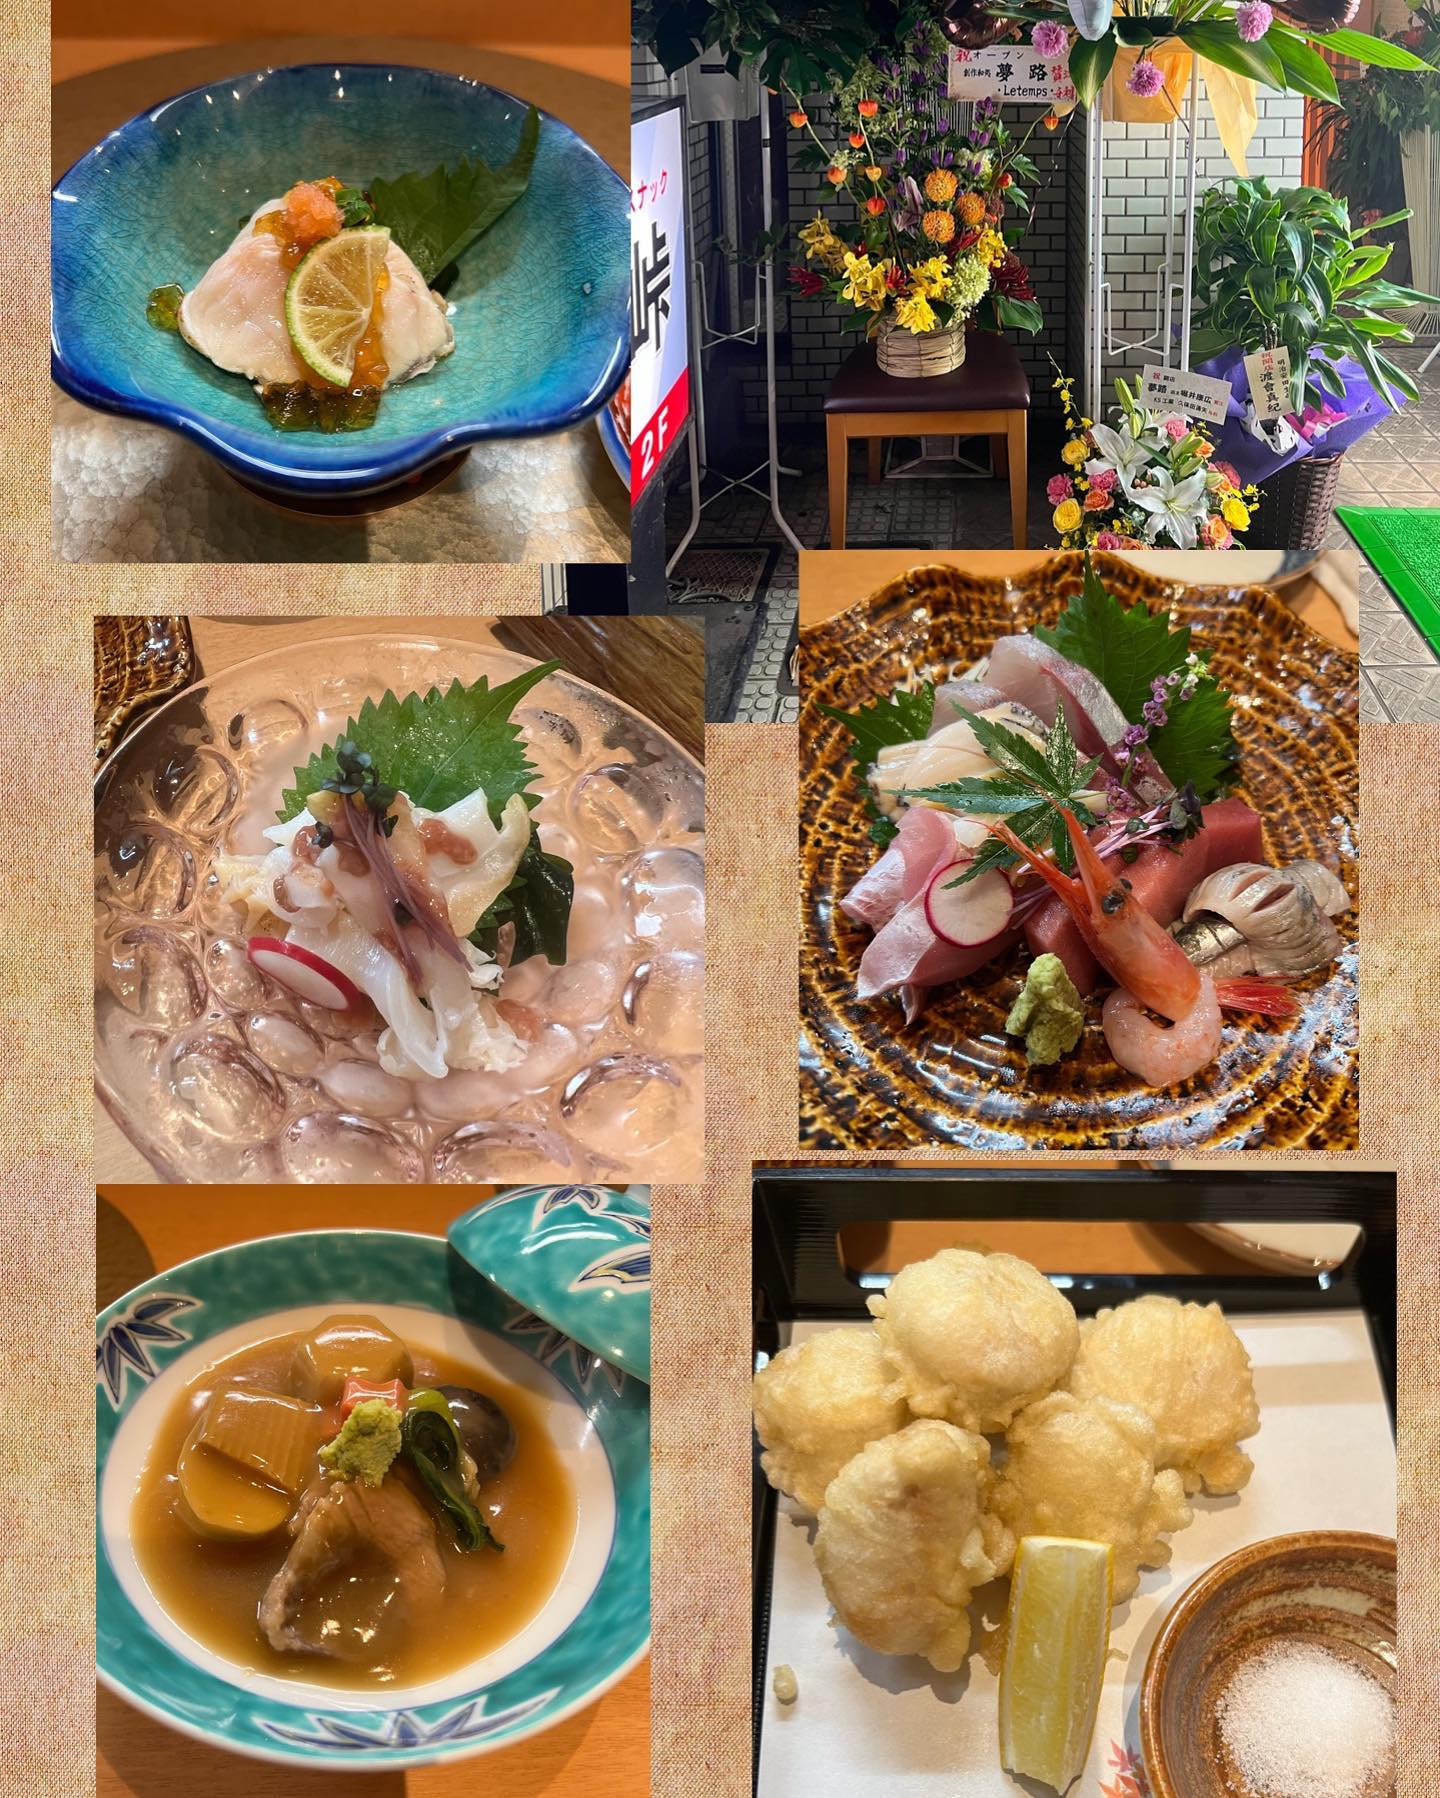 創作和処 夢路当ビル１階に10月に新しくオープンした夢路さんお通しは、河豚の炙りのポン酢ジュレお刺身五種盛り合わせ(あら、アワビ、甘エビ、本マグロ、フクラギいわし)ばい貝酒盗河豚の白子の天ぷら郷土料理の治部煮も観光客の方におすすめです♪とても美味しかったです♪創作料理和処 夢路片町2丁目31-40 タカオビル076-223-3736※開店祝いのお花がでてますので暫く立看板は出しませんが通常通りるたんも営業してます▽follow me▽@letemps22#カフェバー #Cafebar#心地よい空間#金沢片町  #楽しいひと時#CafeBAR_Le_temps#カフェバー_るたん#おひとり様でも #犀川沿いの夜景#景色が良い #お酒と音楽が楽しめる店#歌えるカフェバー#金沢片町カラオケ #静岡出身です#猫好きです#コンパ開催してます#新規オープン#片町2丁目タカオビル#創作料理和処夢路#郷土料理治部煮#観光客の方にもおすすめ - 金沢片町るたん